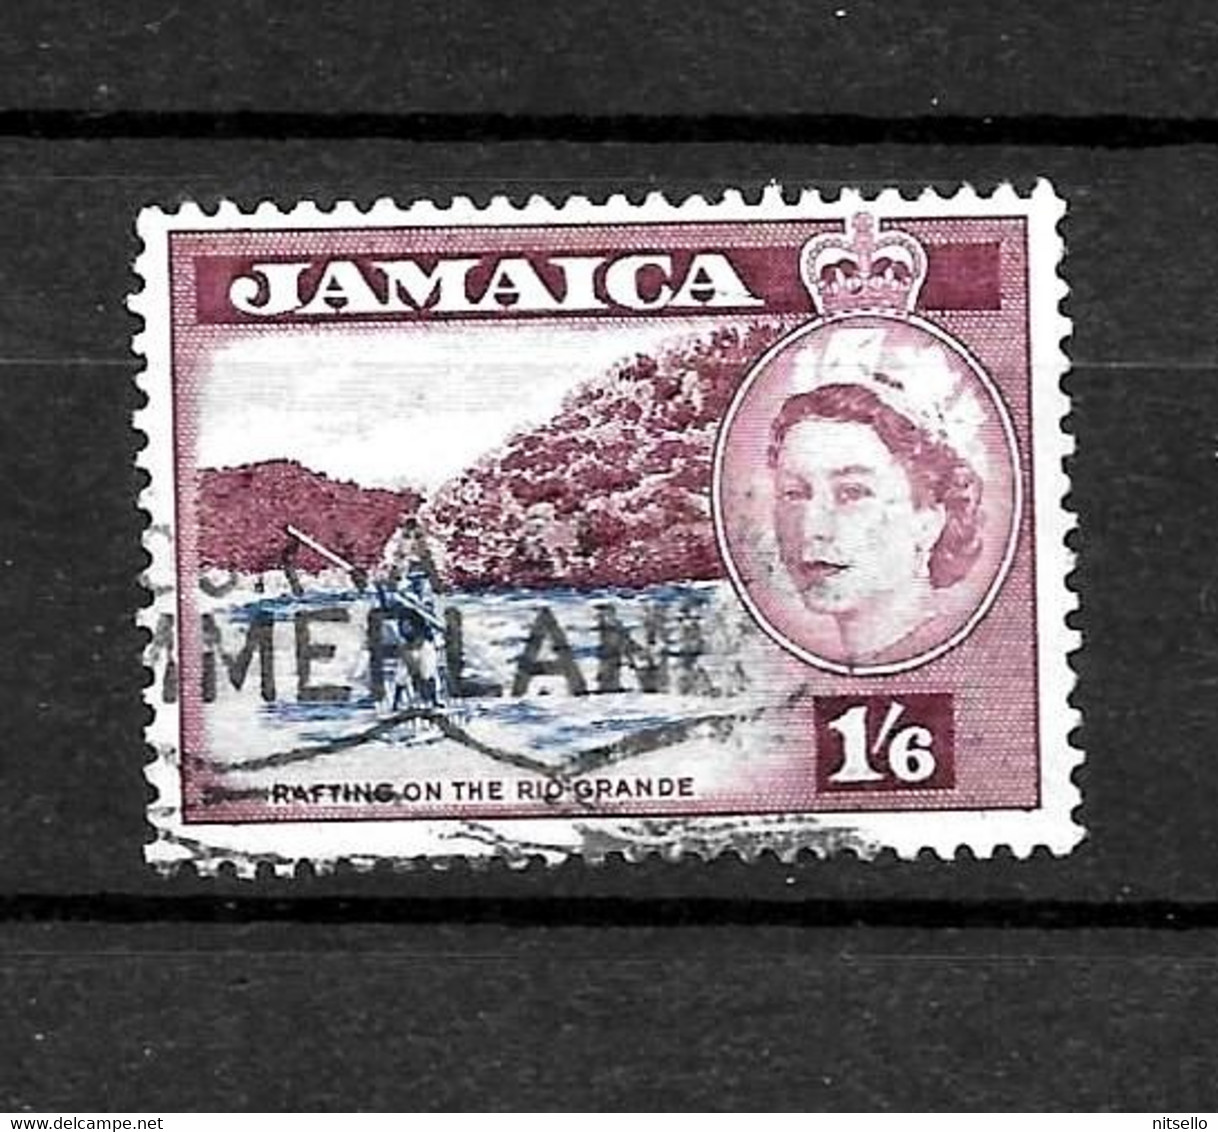 LOTE 2217 ///  JAMAICA BRITANICA  ¡¡¡ OFERTA - LIQUIDATION - JE LIQUIDE !!! - Jamaica (...-1961)